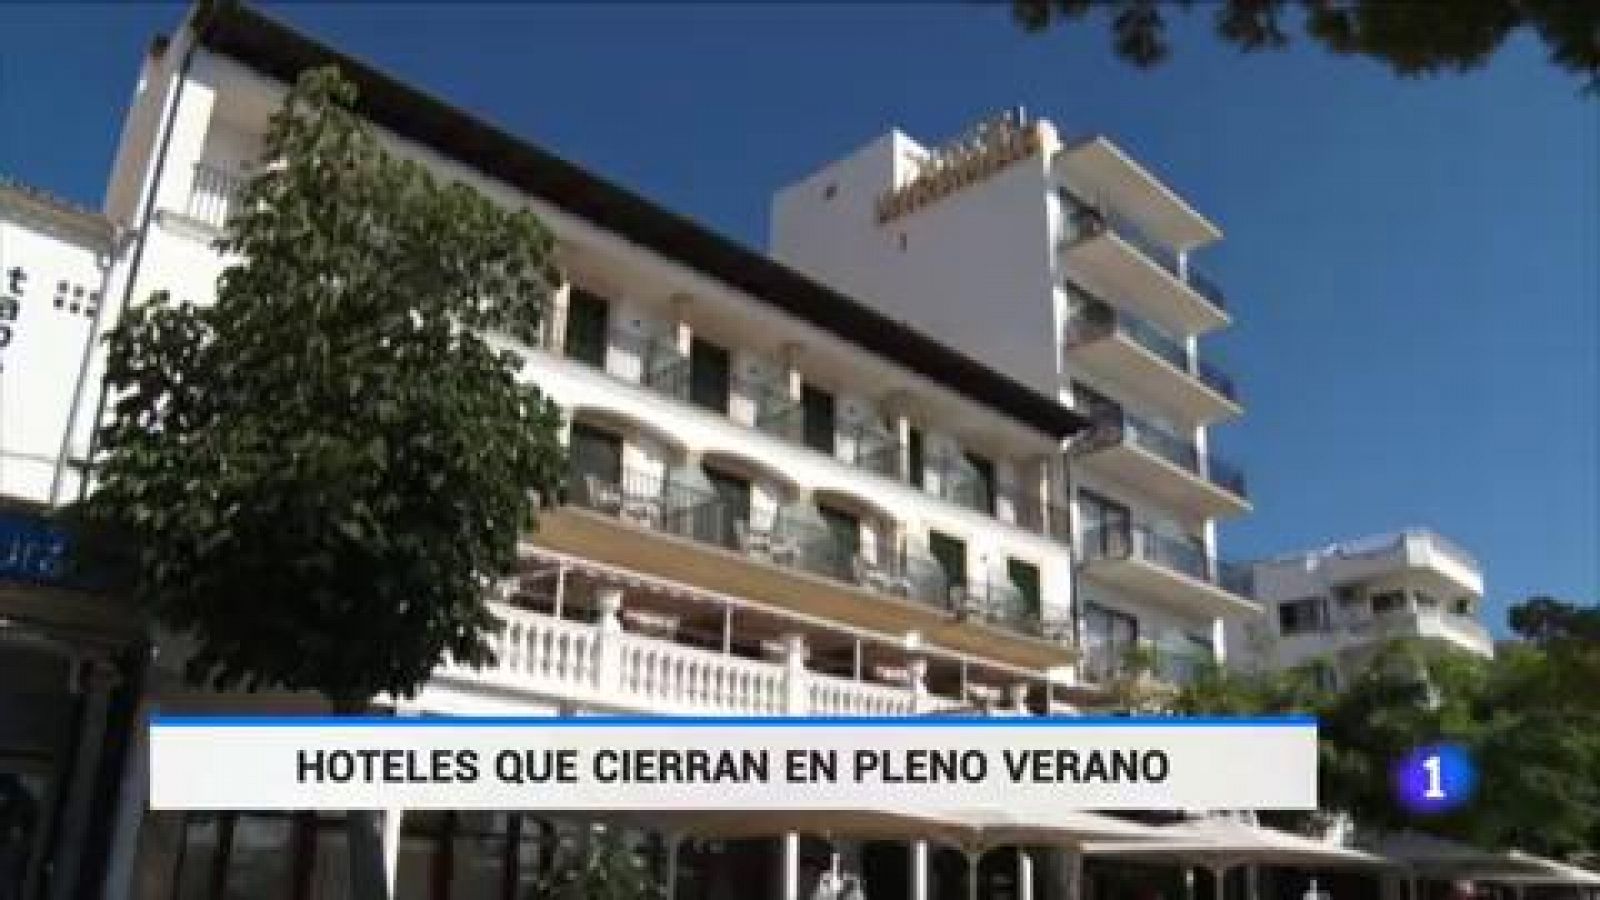 Los hoteles de Baleares han sufrido mucho este verano - RTVE.es